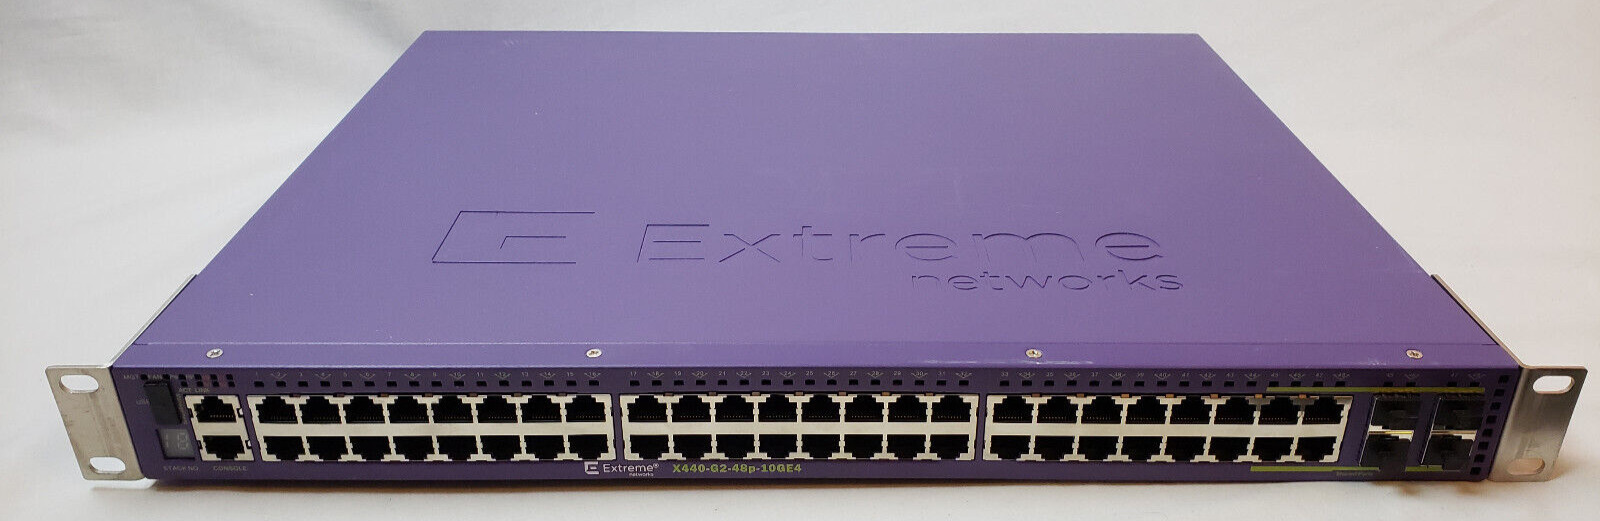 Extreme X440-G2-48P-10G 16535 Switch 48-Port x 1GE PoE 4 Combo 1G/10G SFPort